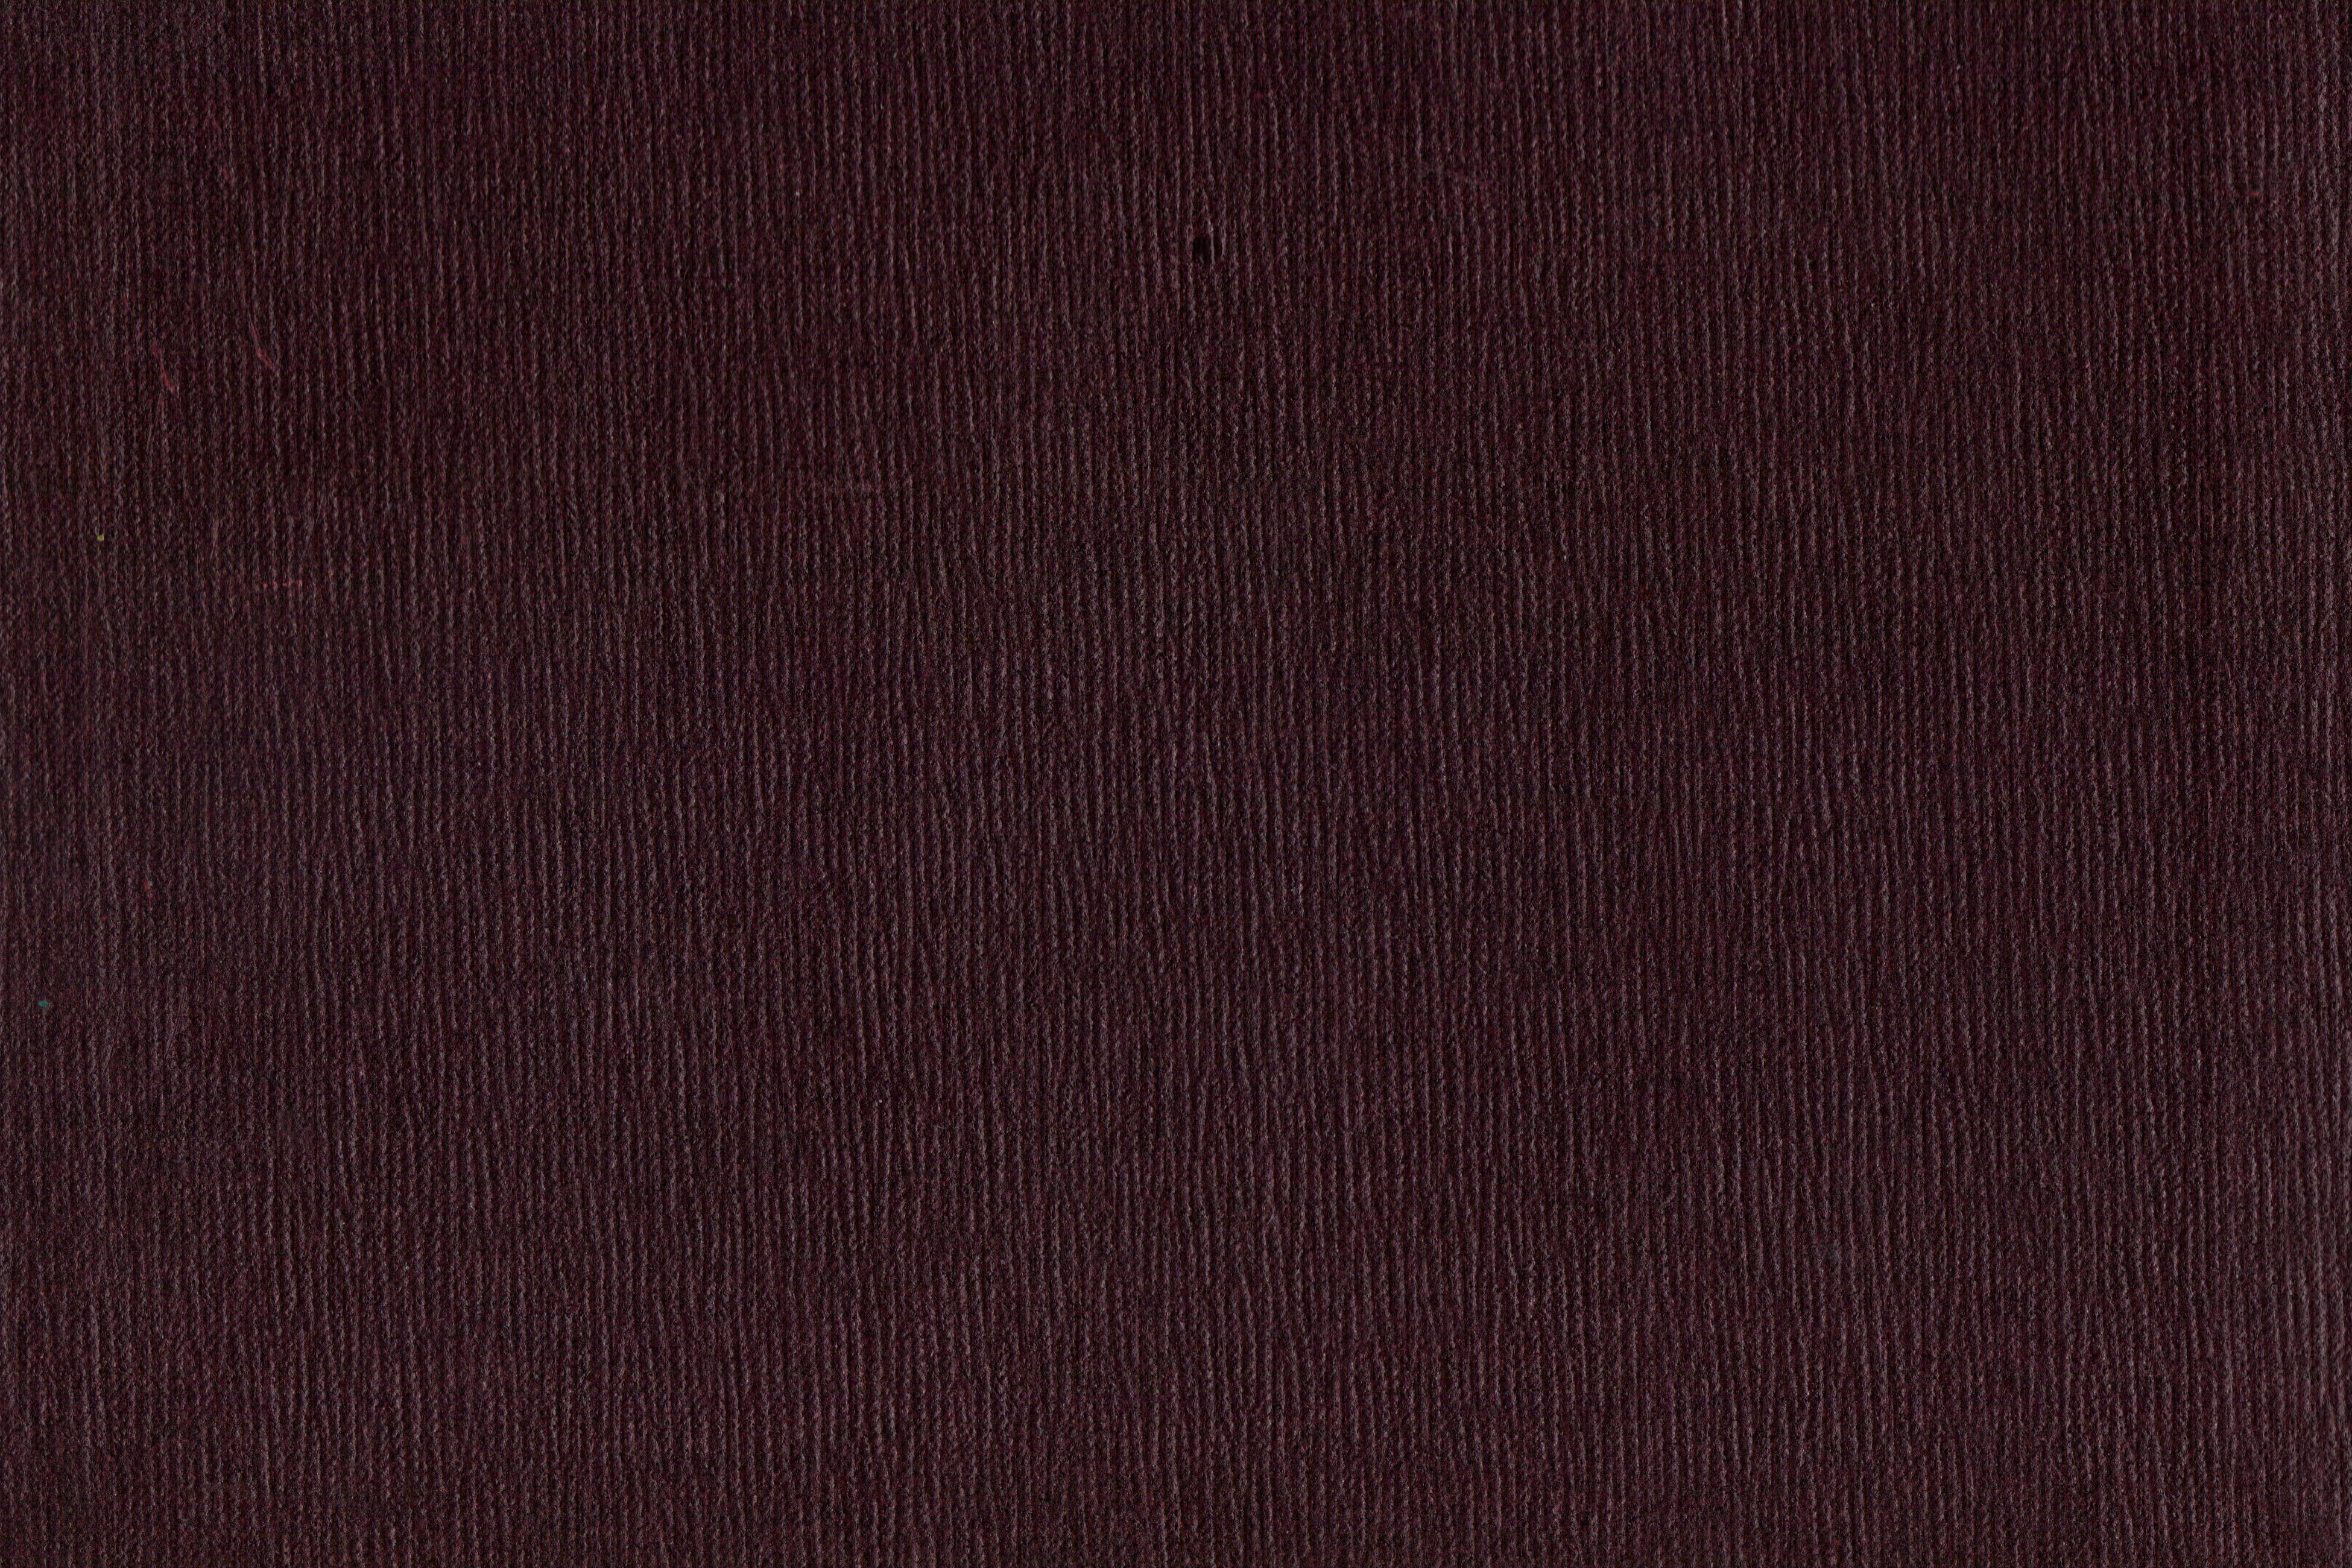 Dark Brown Leather Texture (JPG) | OnlyGFX.com